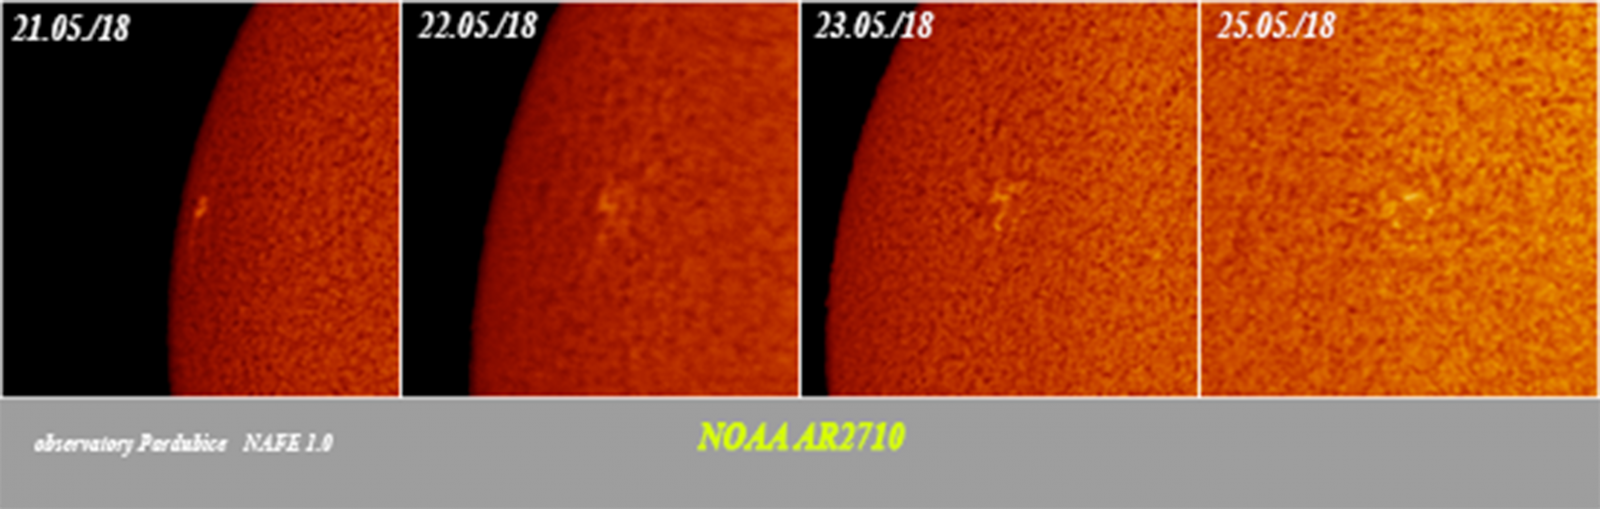 Vývoj aktivní oblasti NOAA AR2710 na Slunci. Obrázek je uměle obarvený.